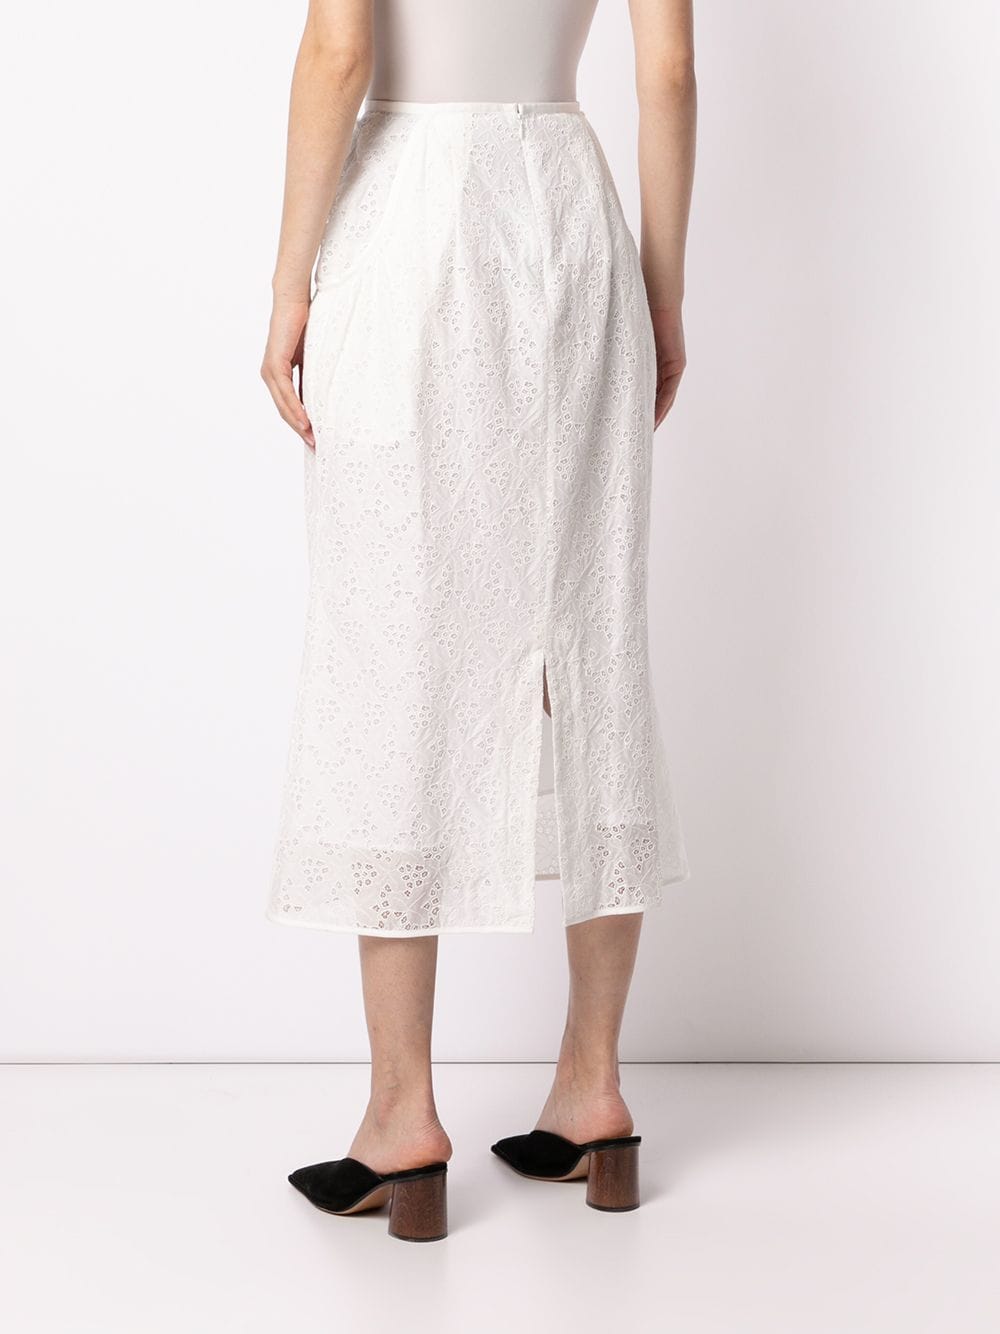 特別価格 mame ぺプラムスカート（16aw） kurogochi ひざ丈スカート 